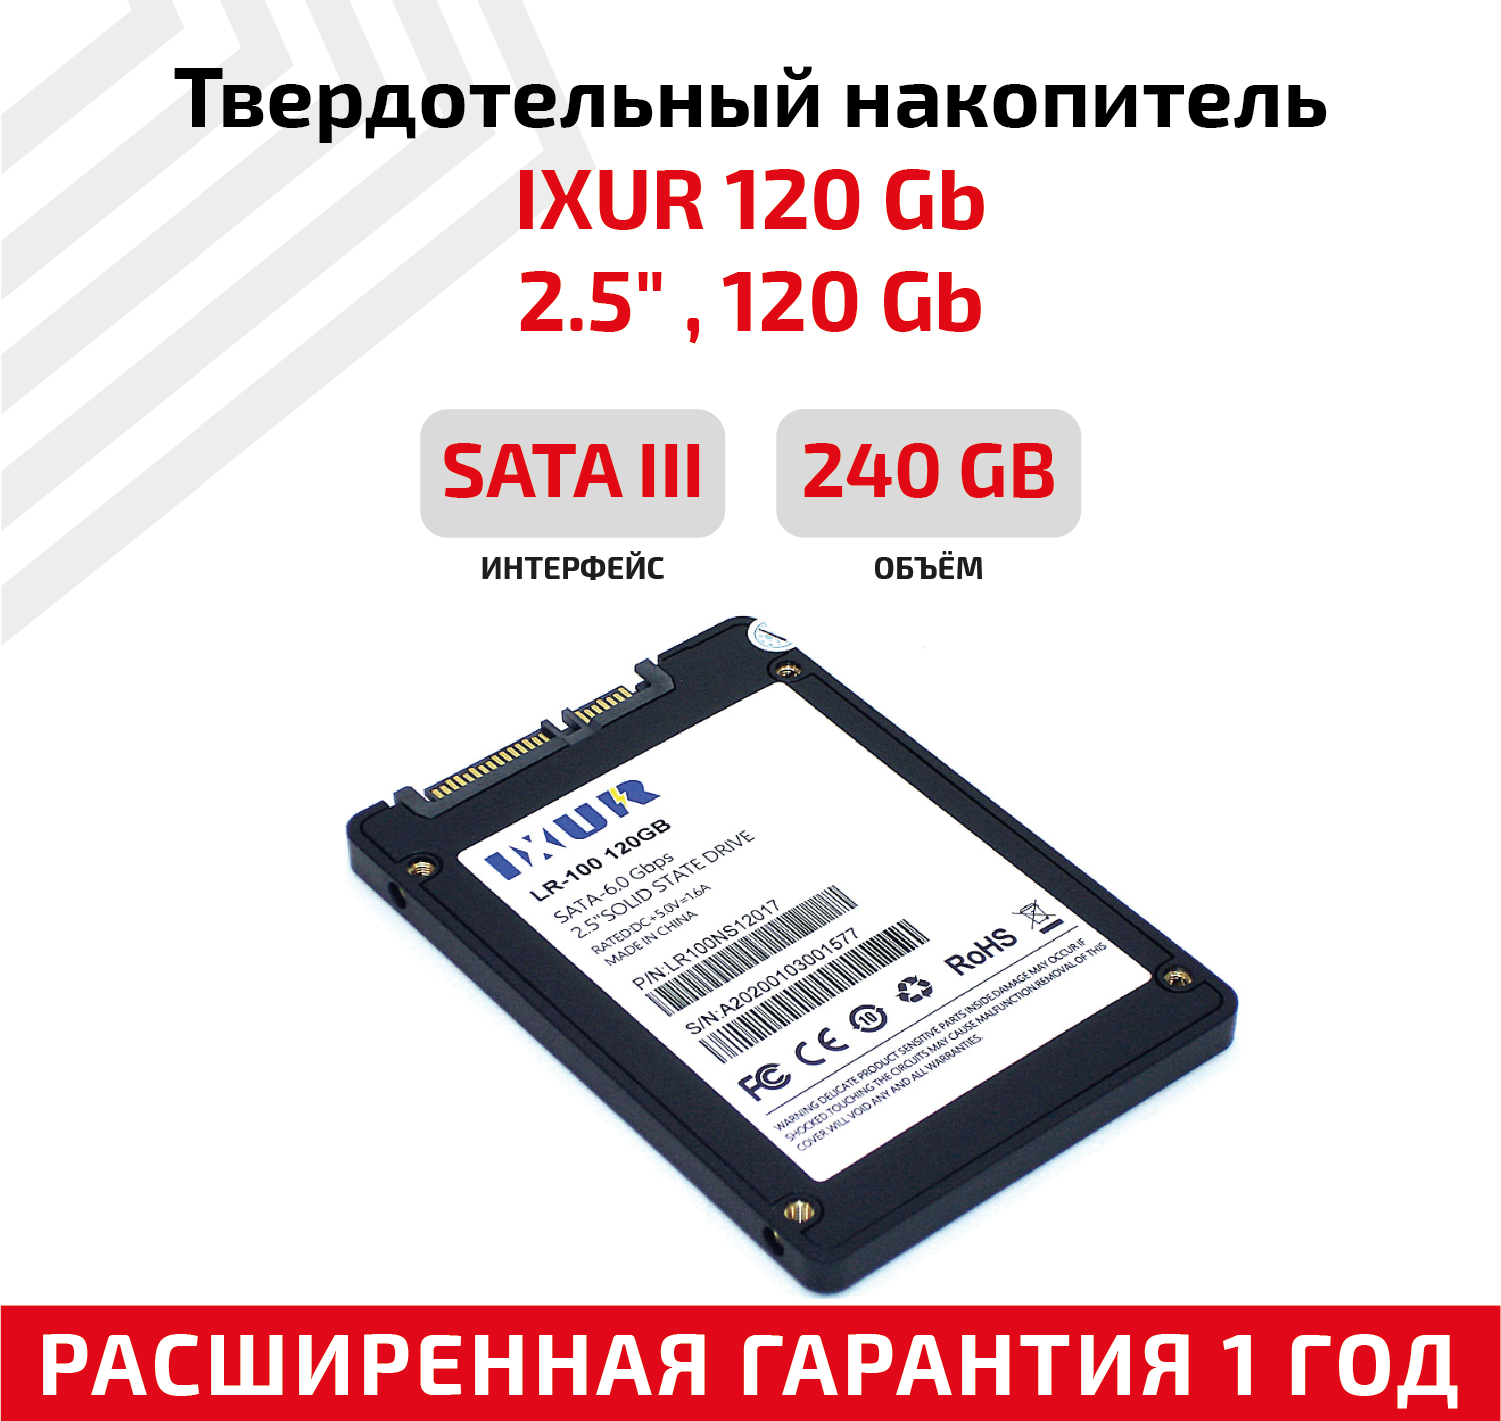 Жесткий диск, твердотелый накопитель, внутренняя память SSD SATA III 2.5, 120GB IXUR